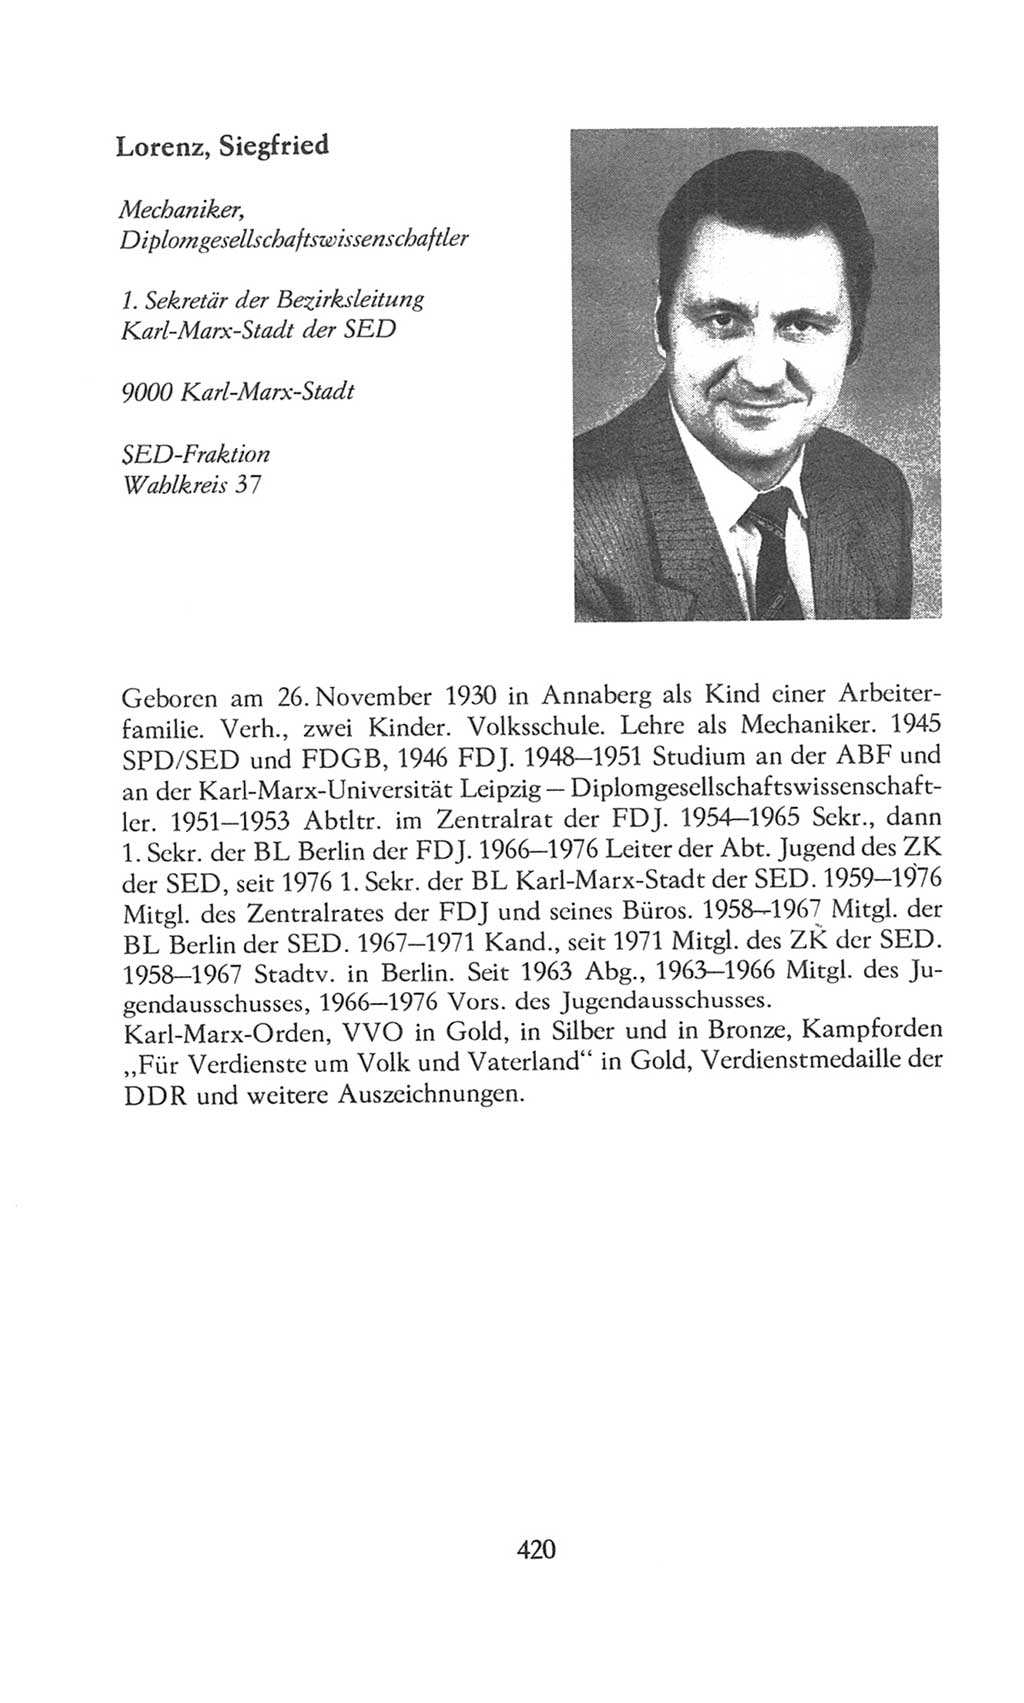 Volkskammer (VK) der Deutschen Demokratischen Republik (DDR), 8. Wahlperiode 1981-1986, Seite 420 (VK. DDR 8. WP. 1981-1986, S. 420)